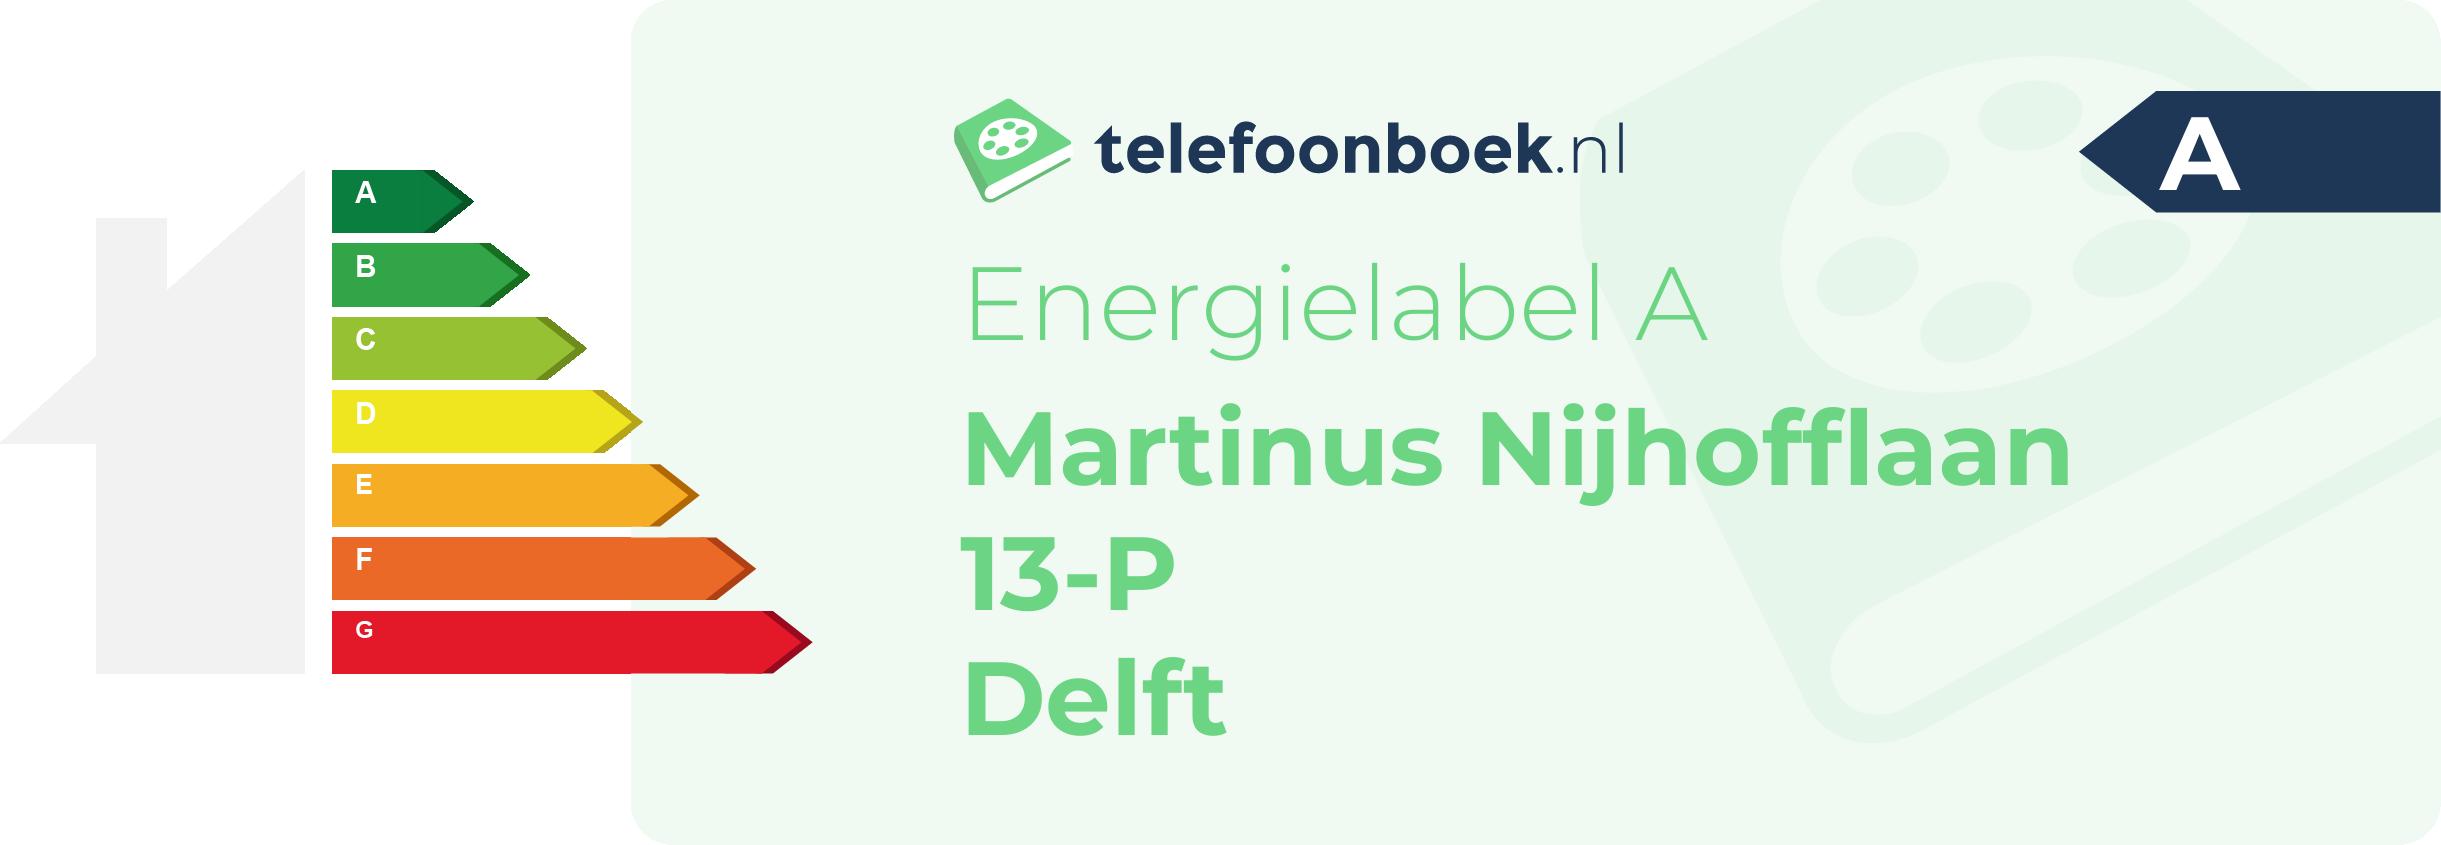 Energielabel Martinus Nijhofflaan 13-P Delft